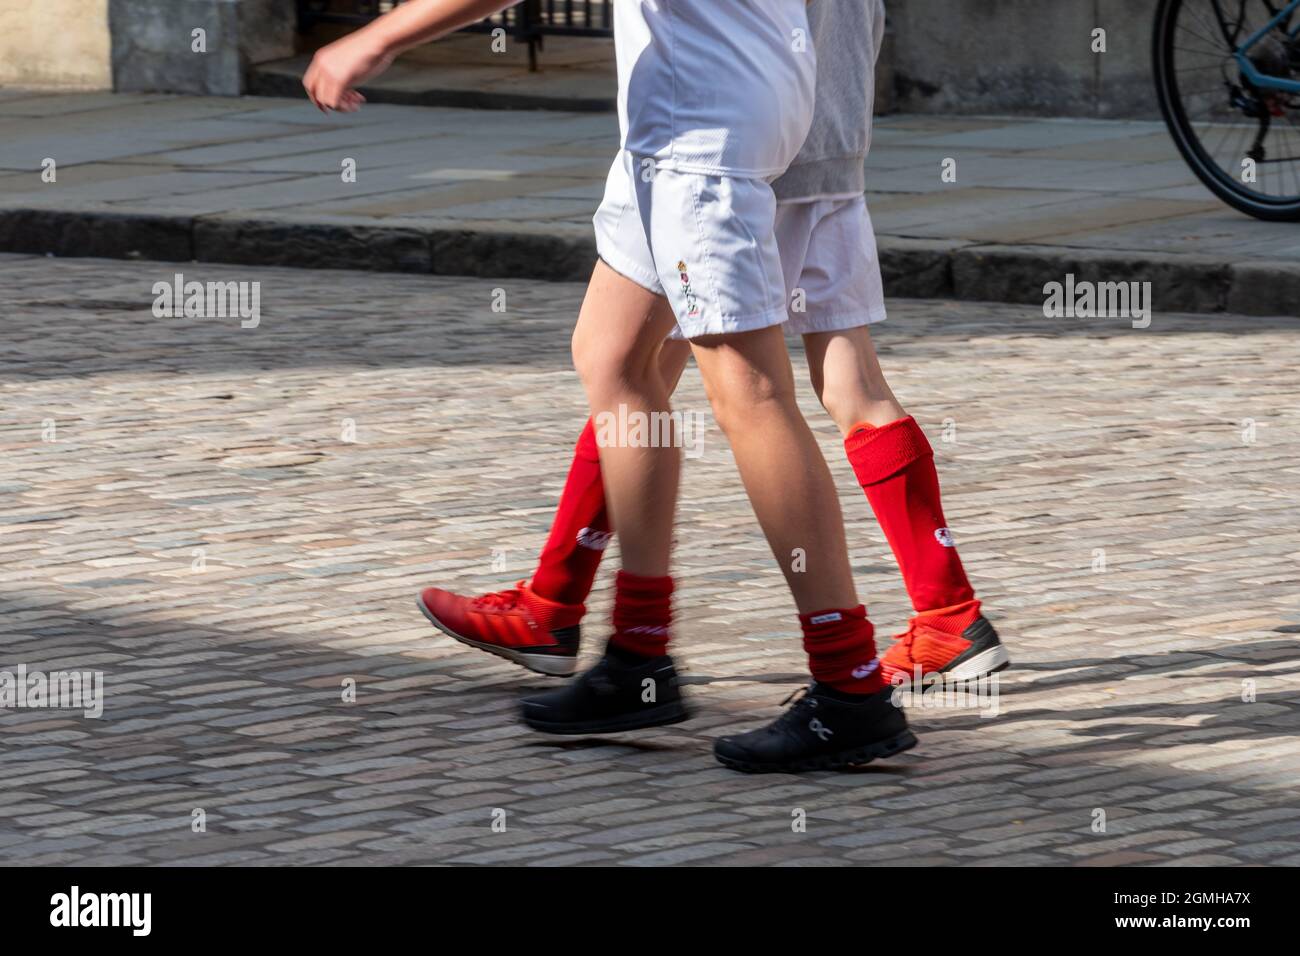 Deux écoliers qui descendent dans une rue pavée dans des vêtements de sport - gros plan de leurs jambes portant des chaussettes de football rouges et des shorts blancs Banque D'Images